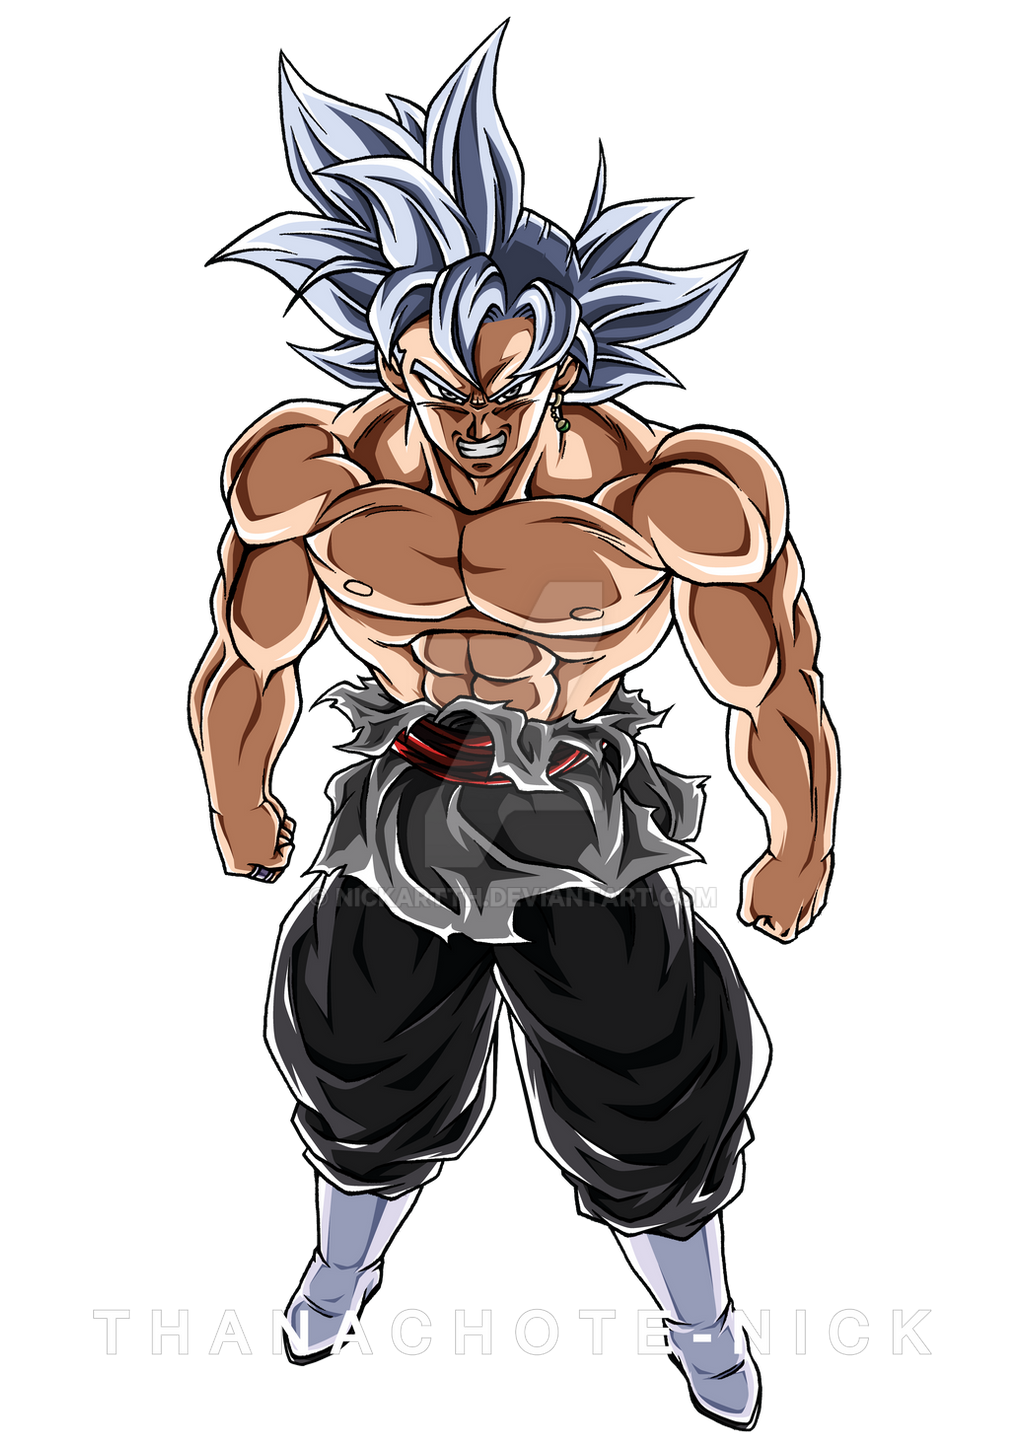 Goku Black SSJ4 V3 by Greytonano on DeviantArt